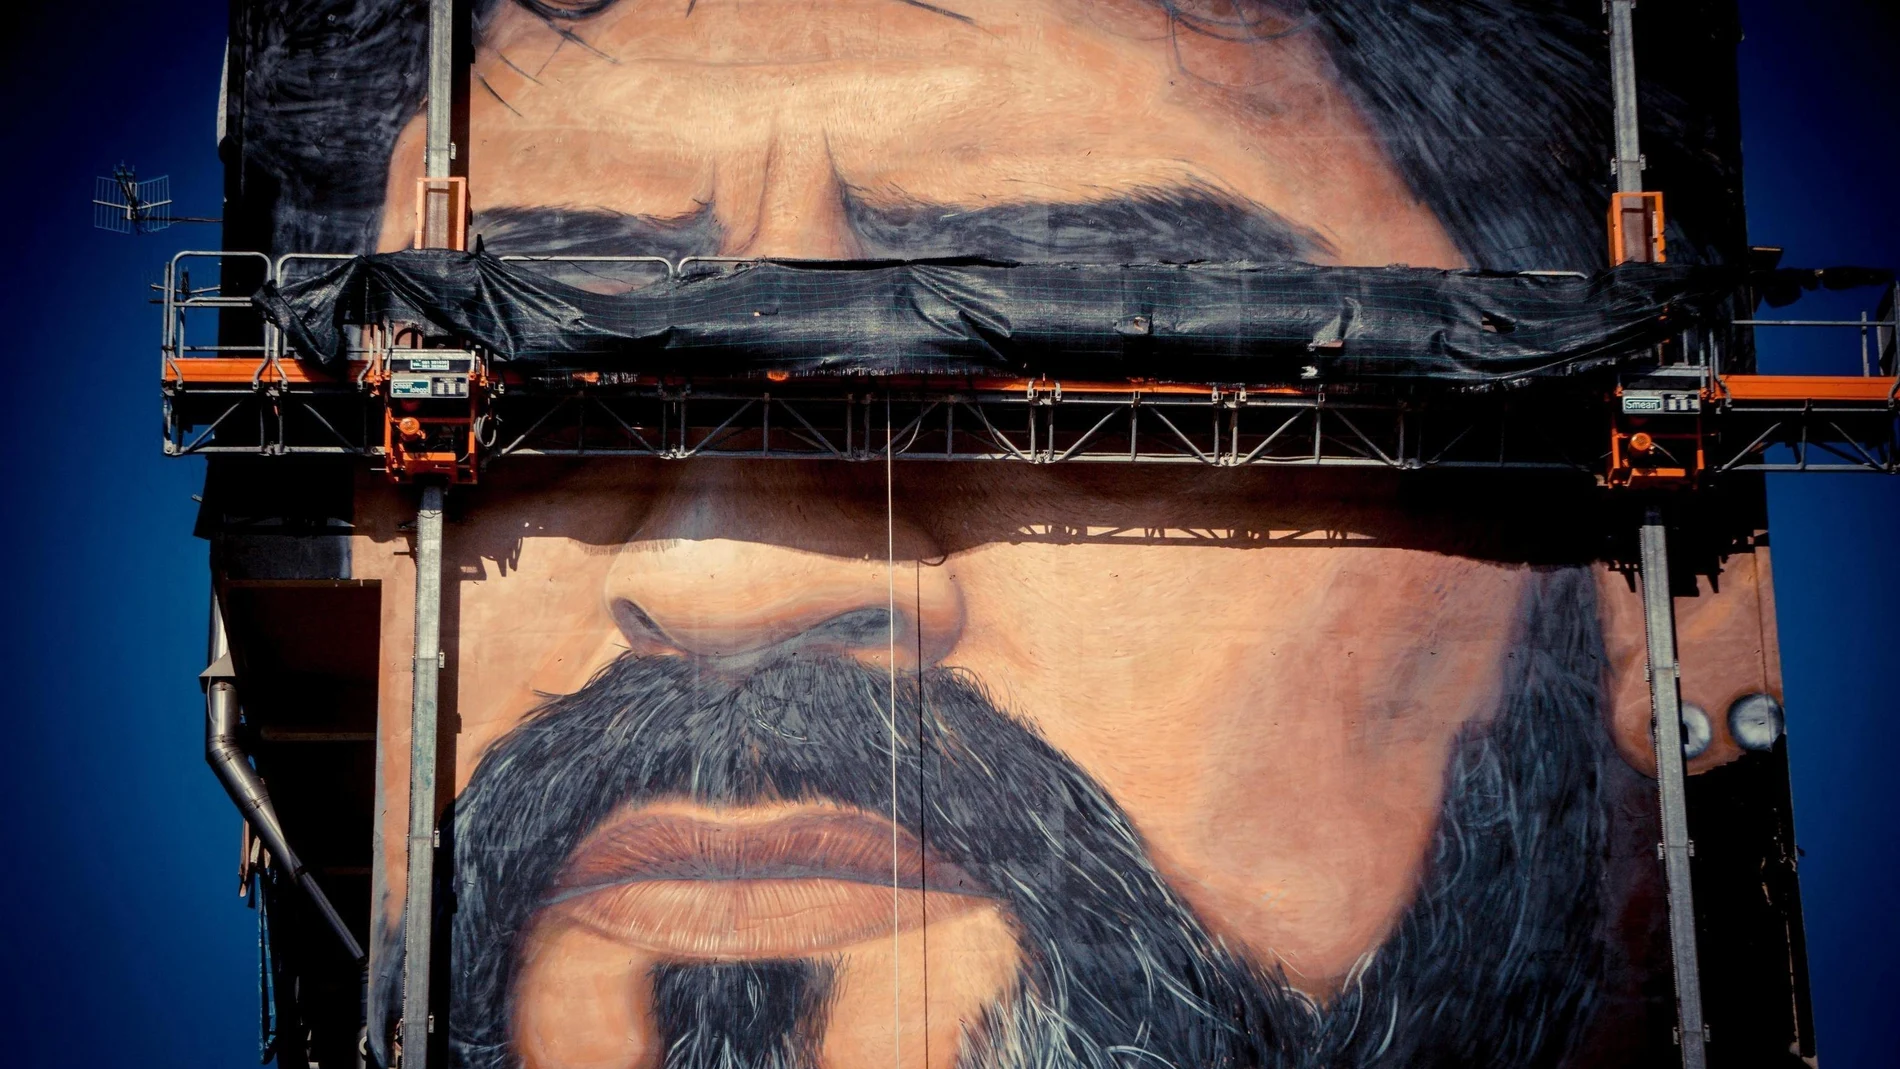 Vista de un mural del artista italiano Jorit Agoch, en el que aparece retratado el exfutbolista argentino Diego Armando Maradona, en un edificio de Nápoles